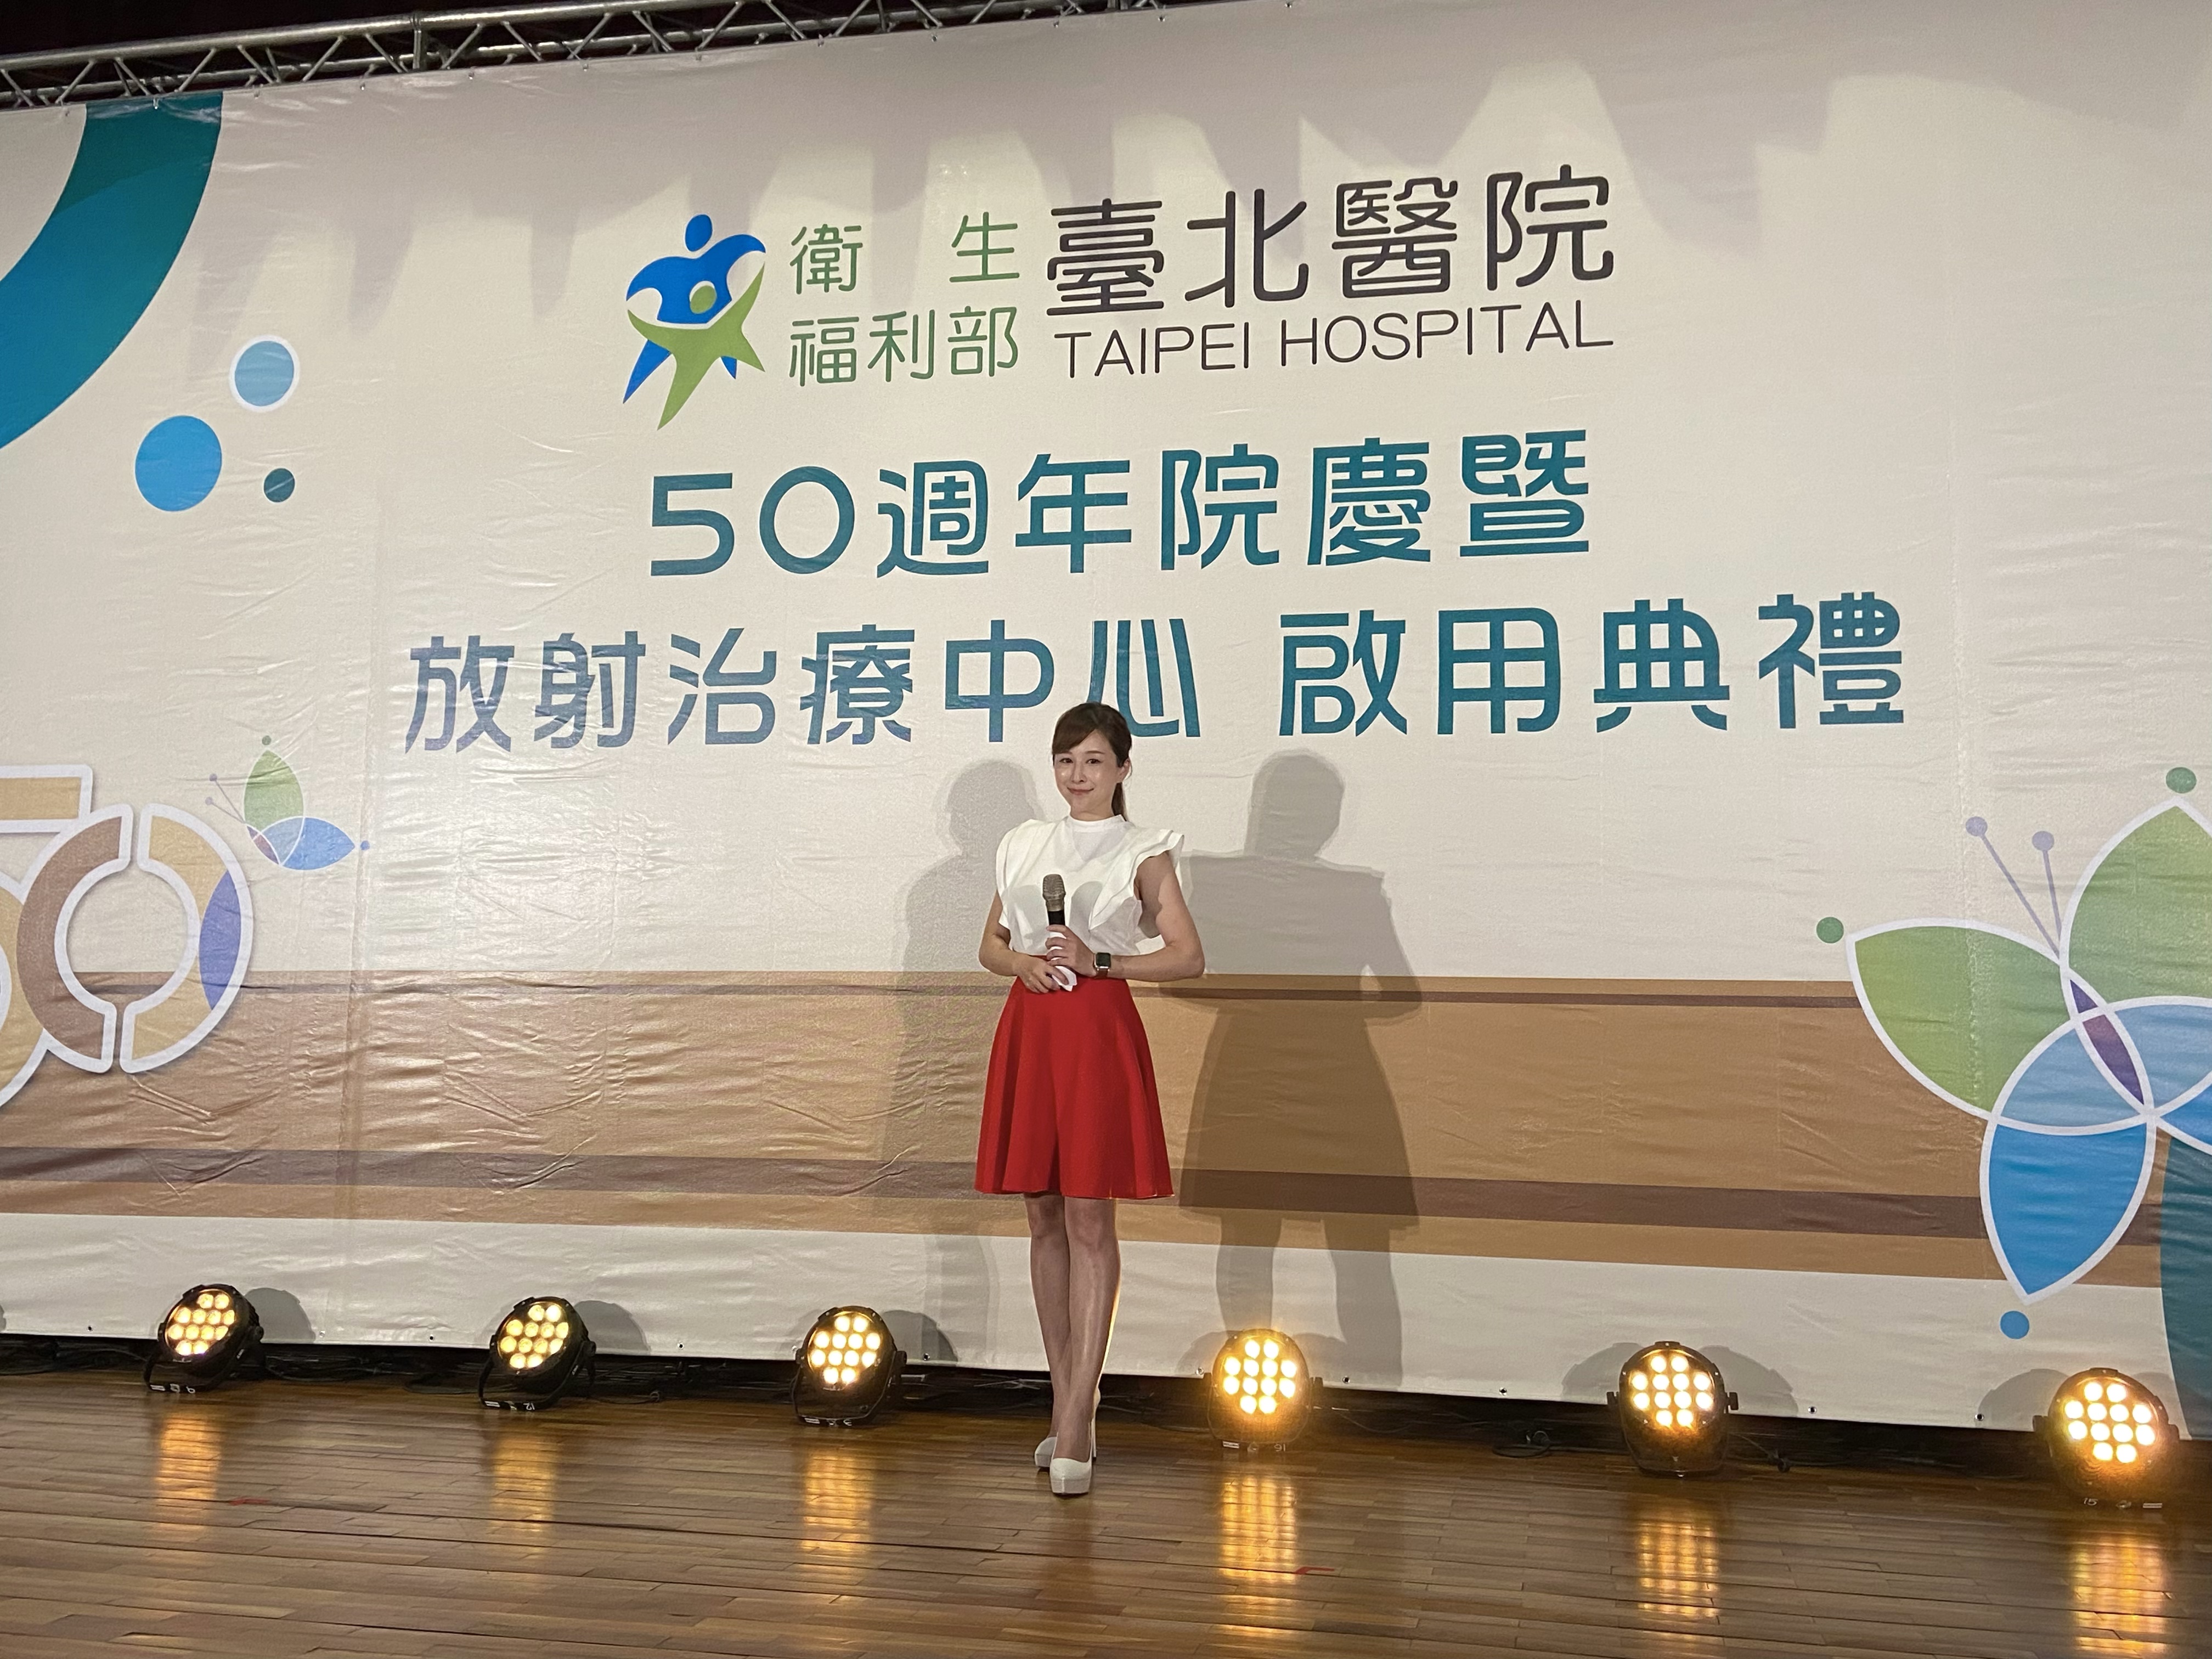 主持人專業主持人怡沛工作紀錄: 台北醫院50週年院慶活動主持人